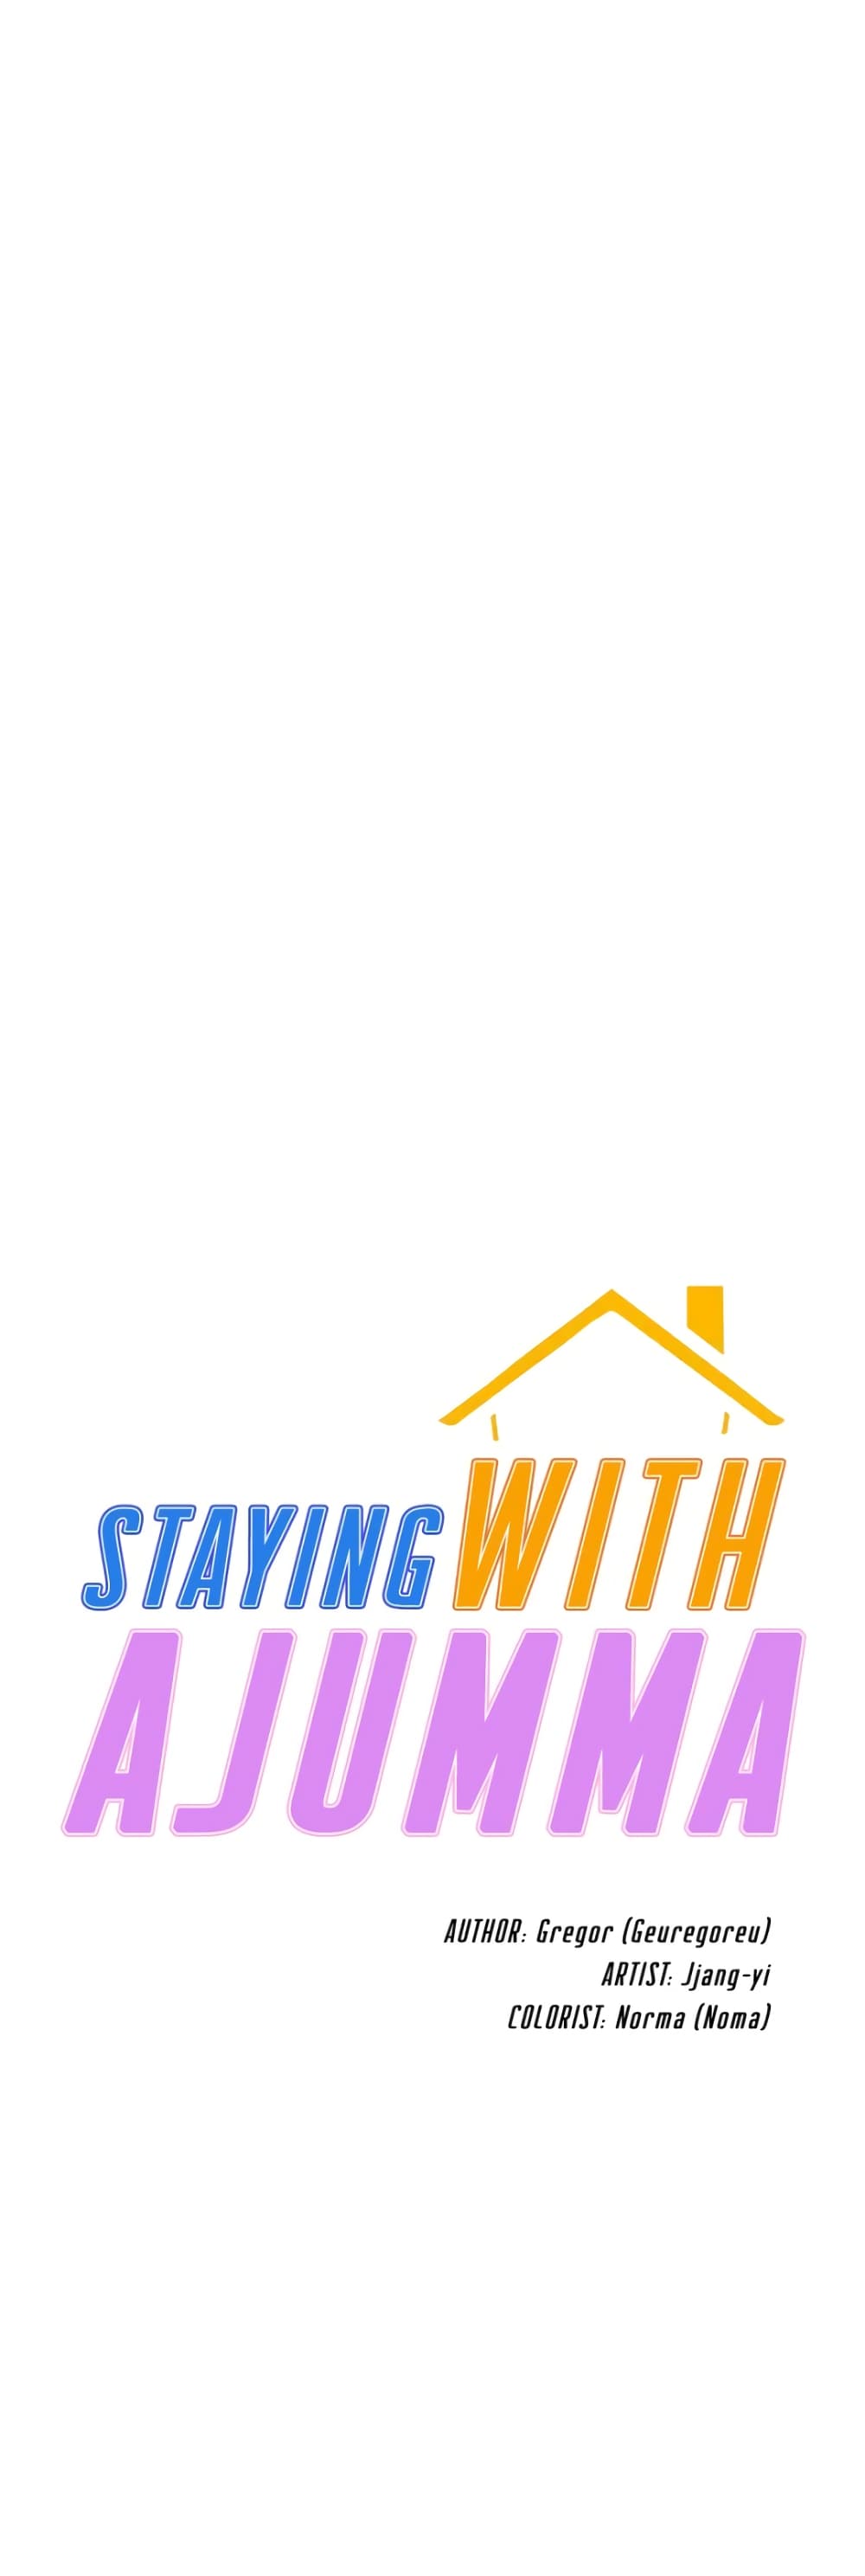 Staying with Ajumma 54-54